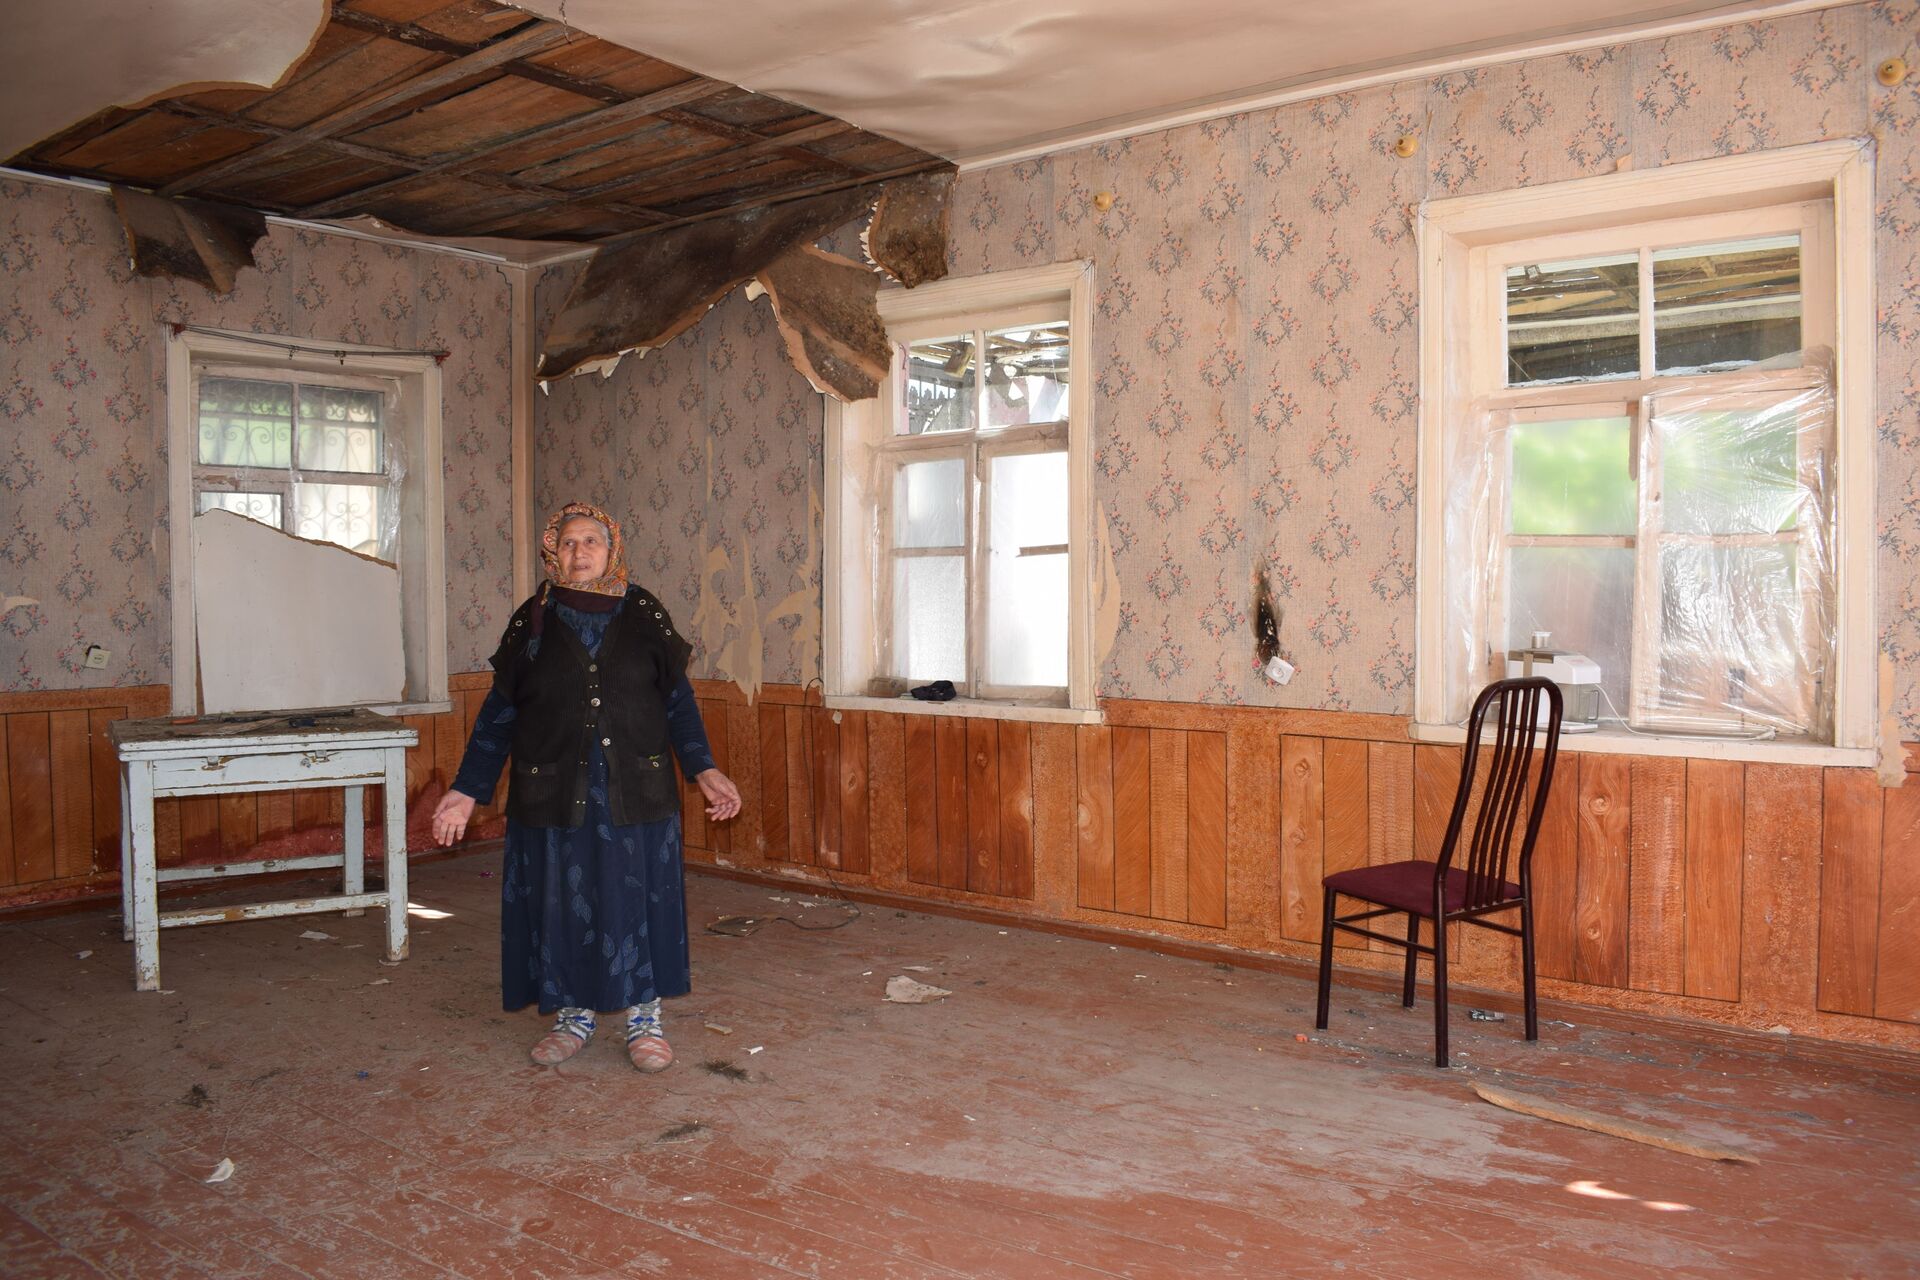 Жильцы разрушенных домов Гянджи: главное, что мы выжили после ракетных обстрелов - Sputnik Азербайджан, 1920, 27.04.2021